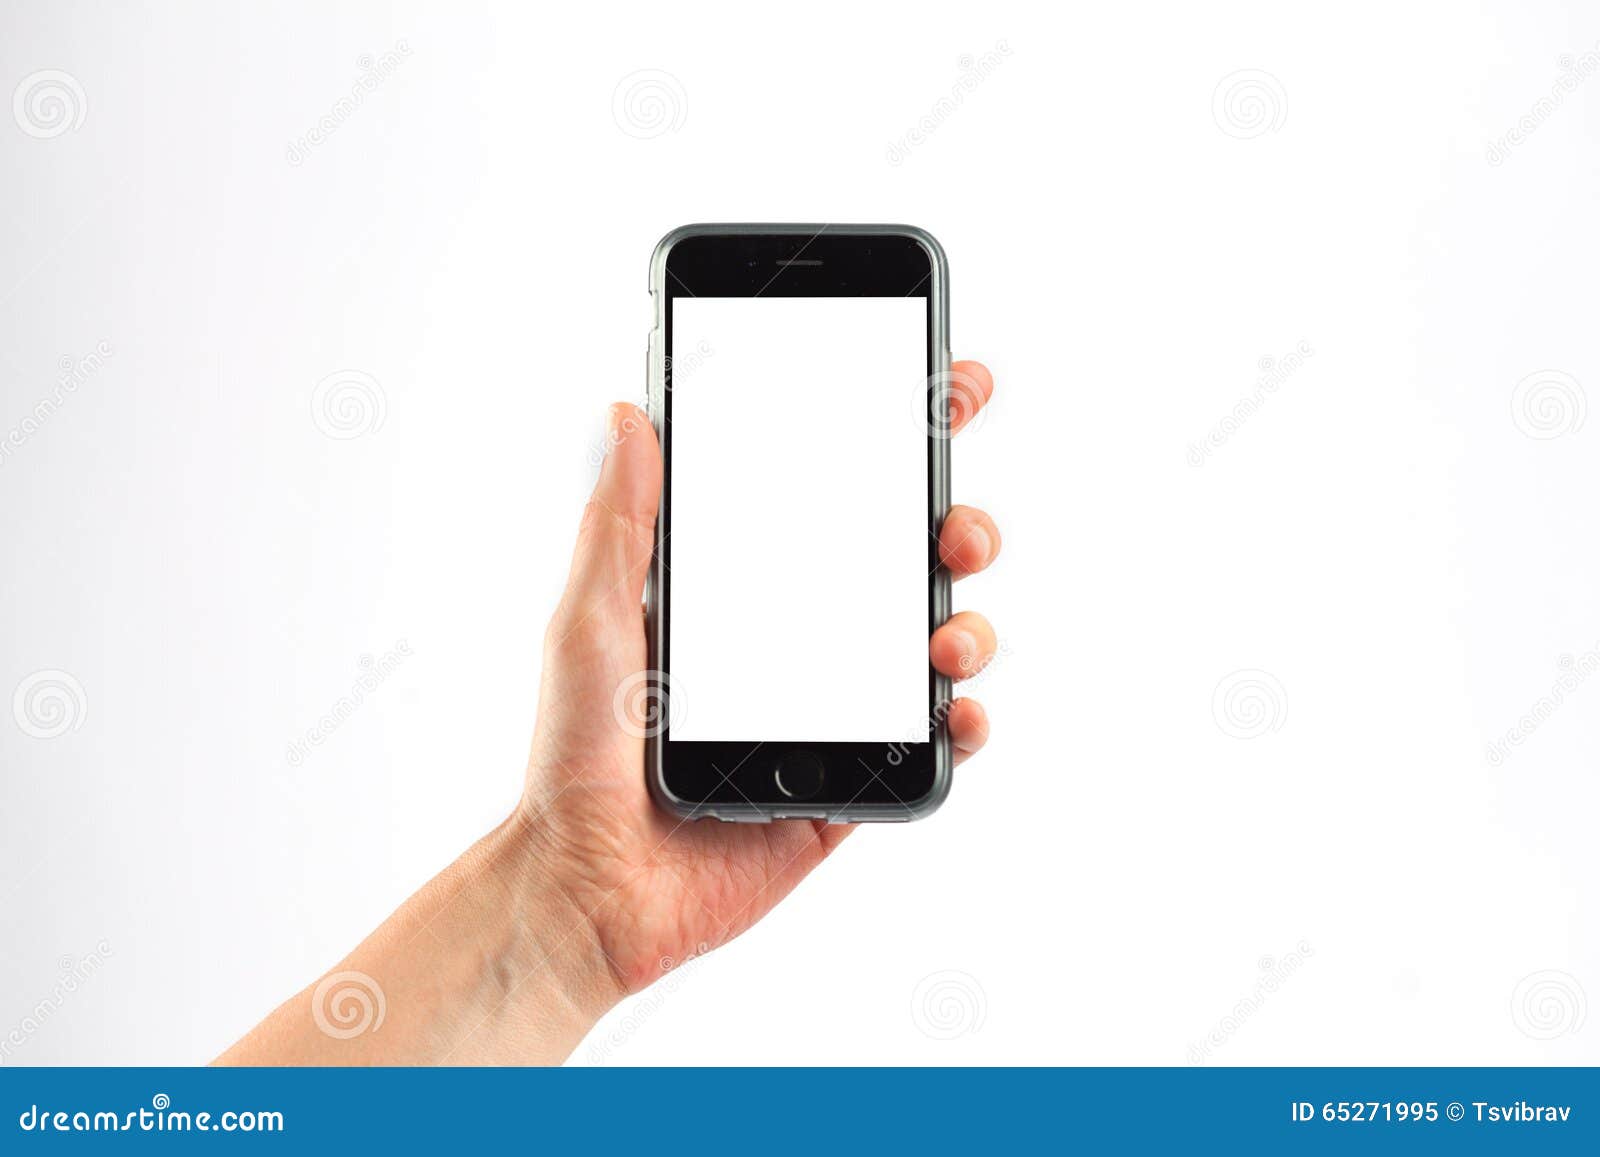 Горизонтальными в вертикальном в телефоне. Держит телефон. Рука держит телефон вертикально. Рука держит смартфон горизонтально. Телефон в руке вертикально.